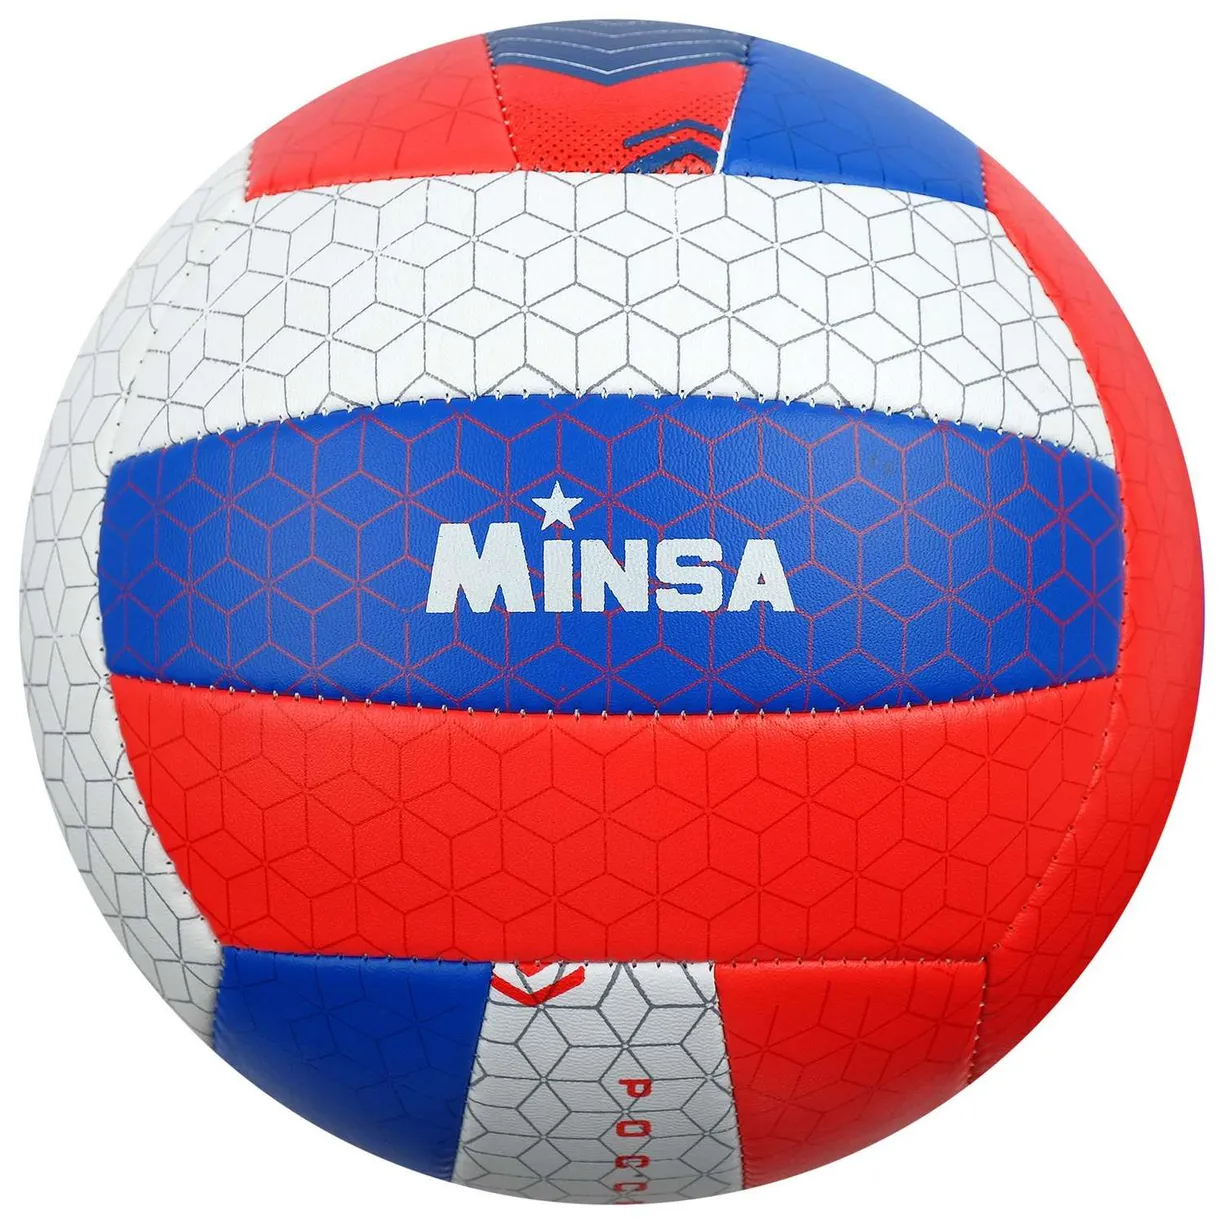 Мяч волейбольный Minsa Россия размер 5 мячи minsa мяч волейбольный размер 5 1276999